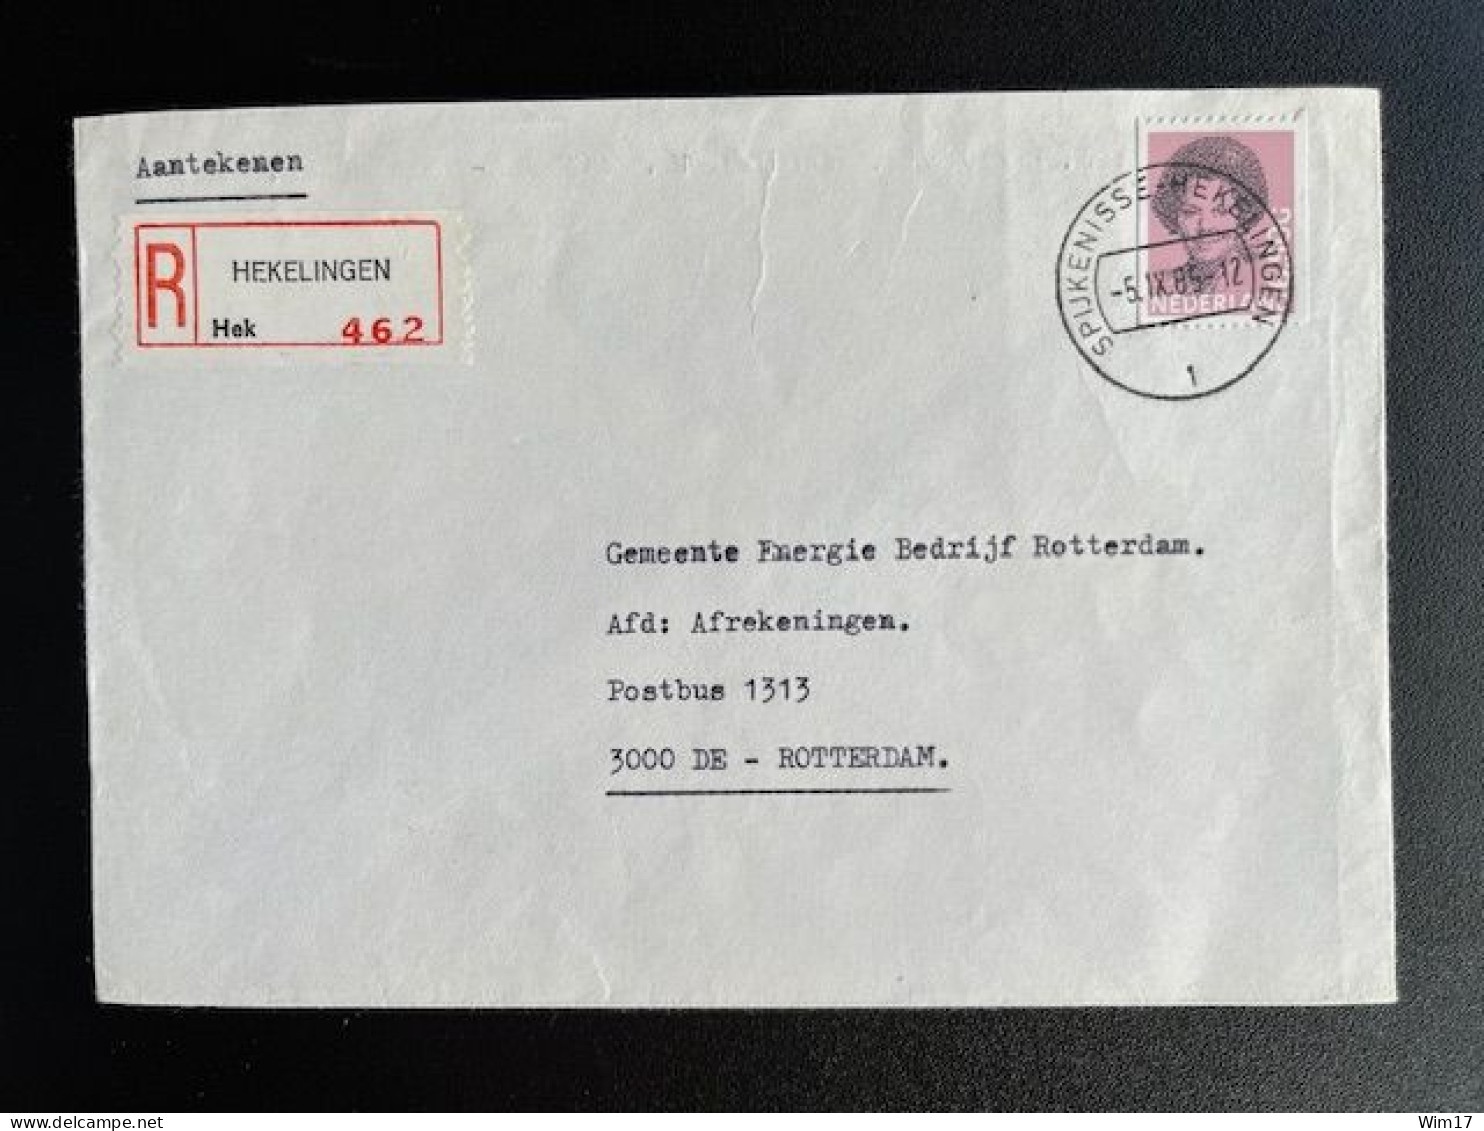 NETHERLANDS 1985 REGISTERED LETTER HEKELINGEN TO ROTTERDAM 05-09-1985 NEDERLAND AANGETEKEND - Lettres & Documents